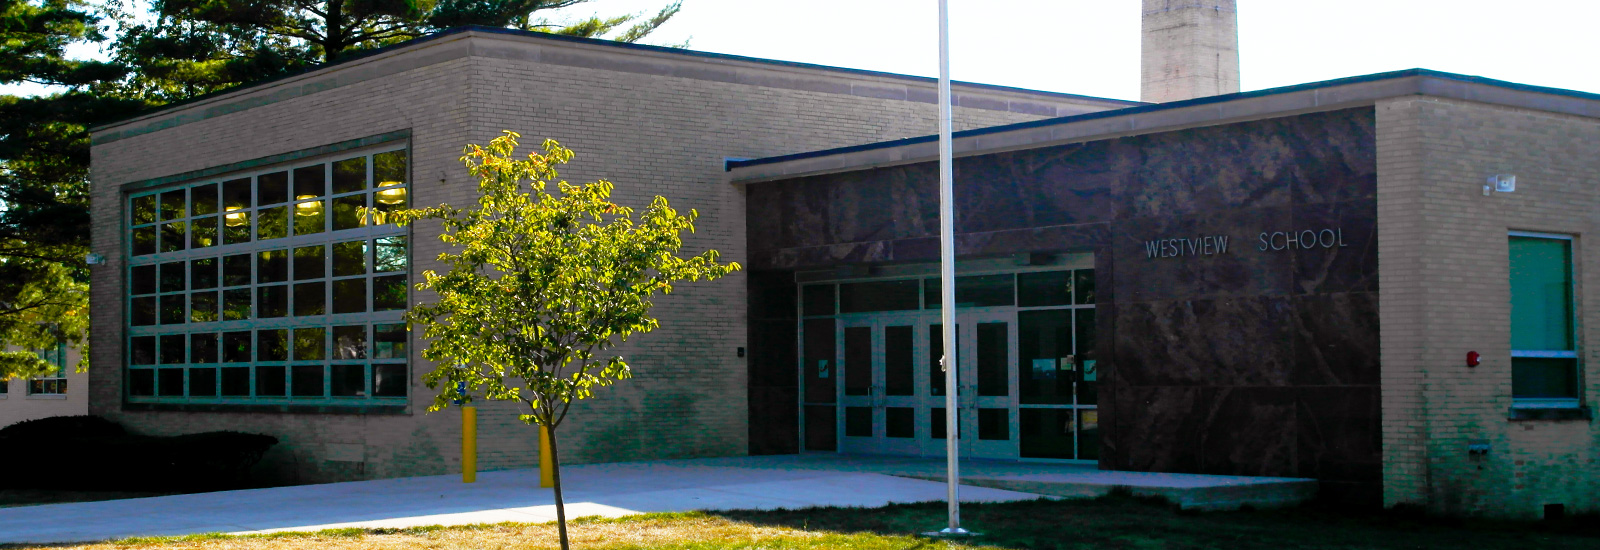 westview elementary school